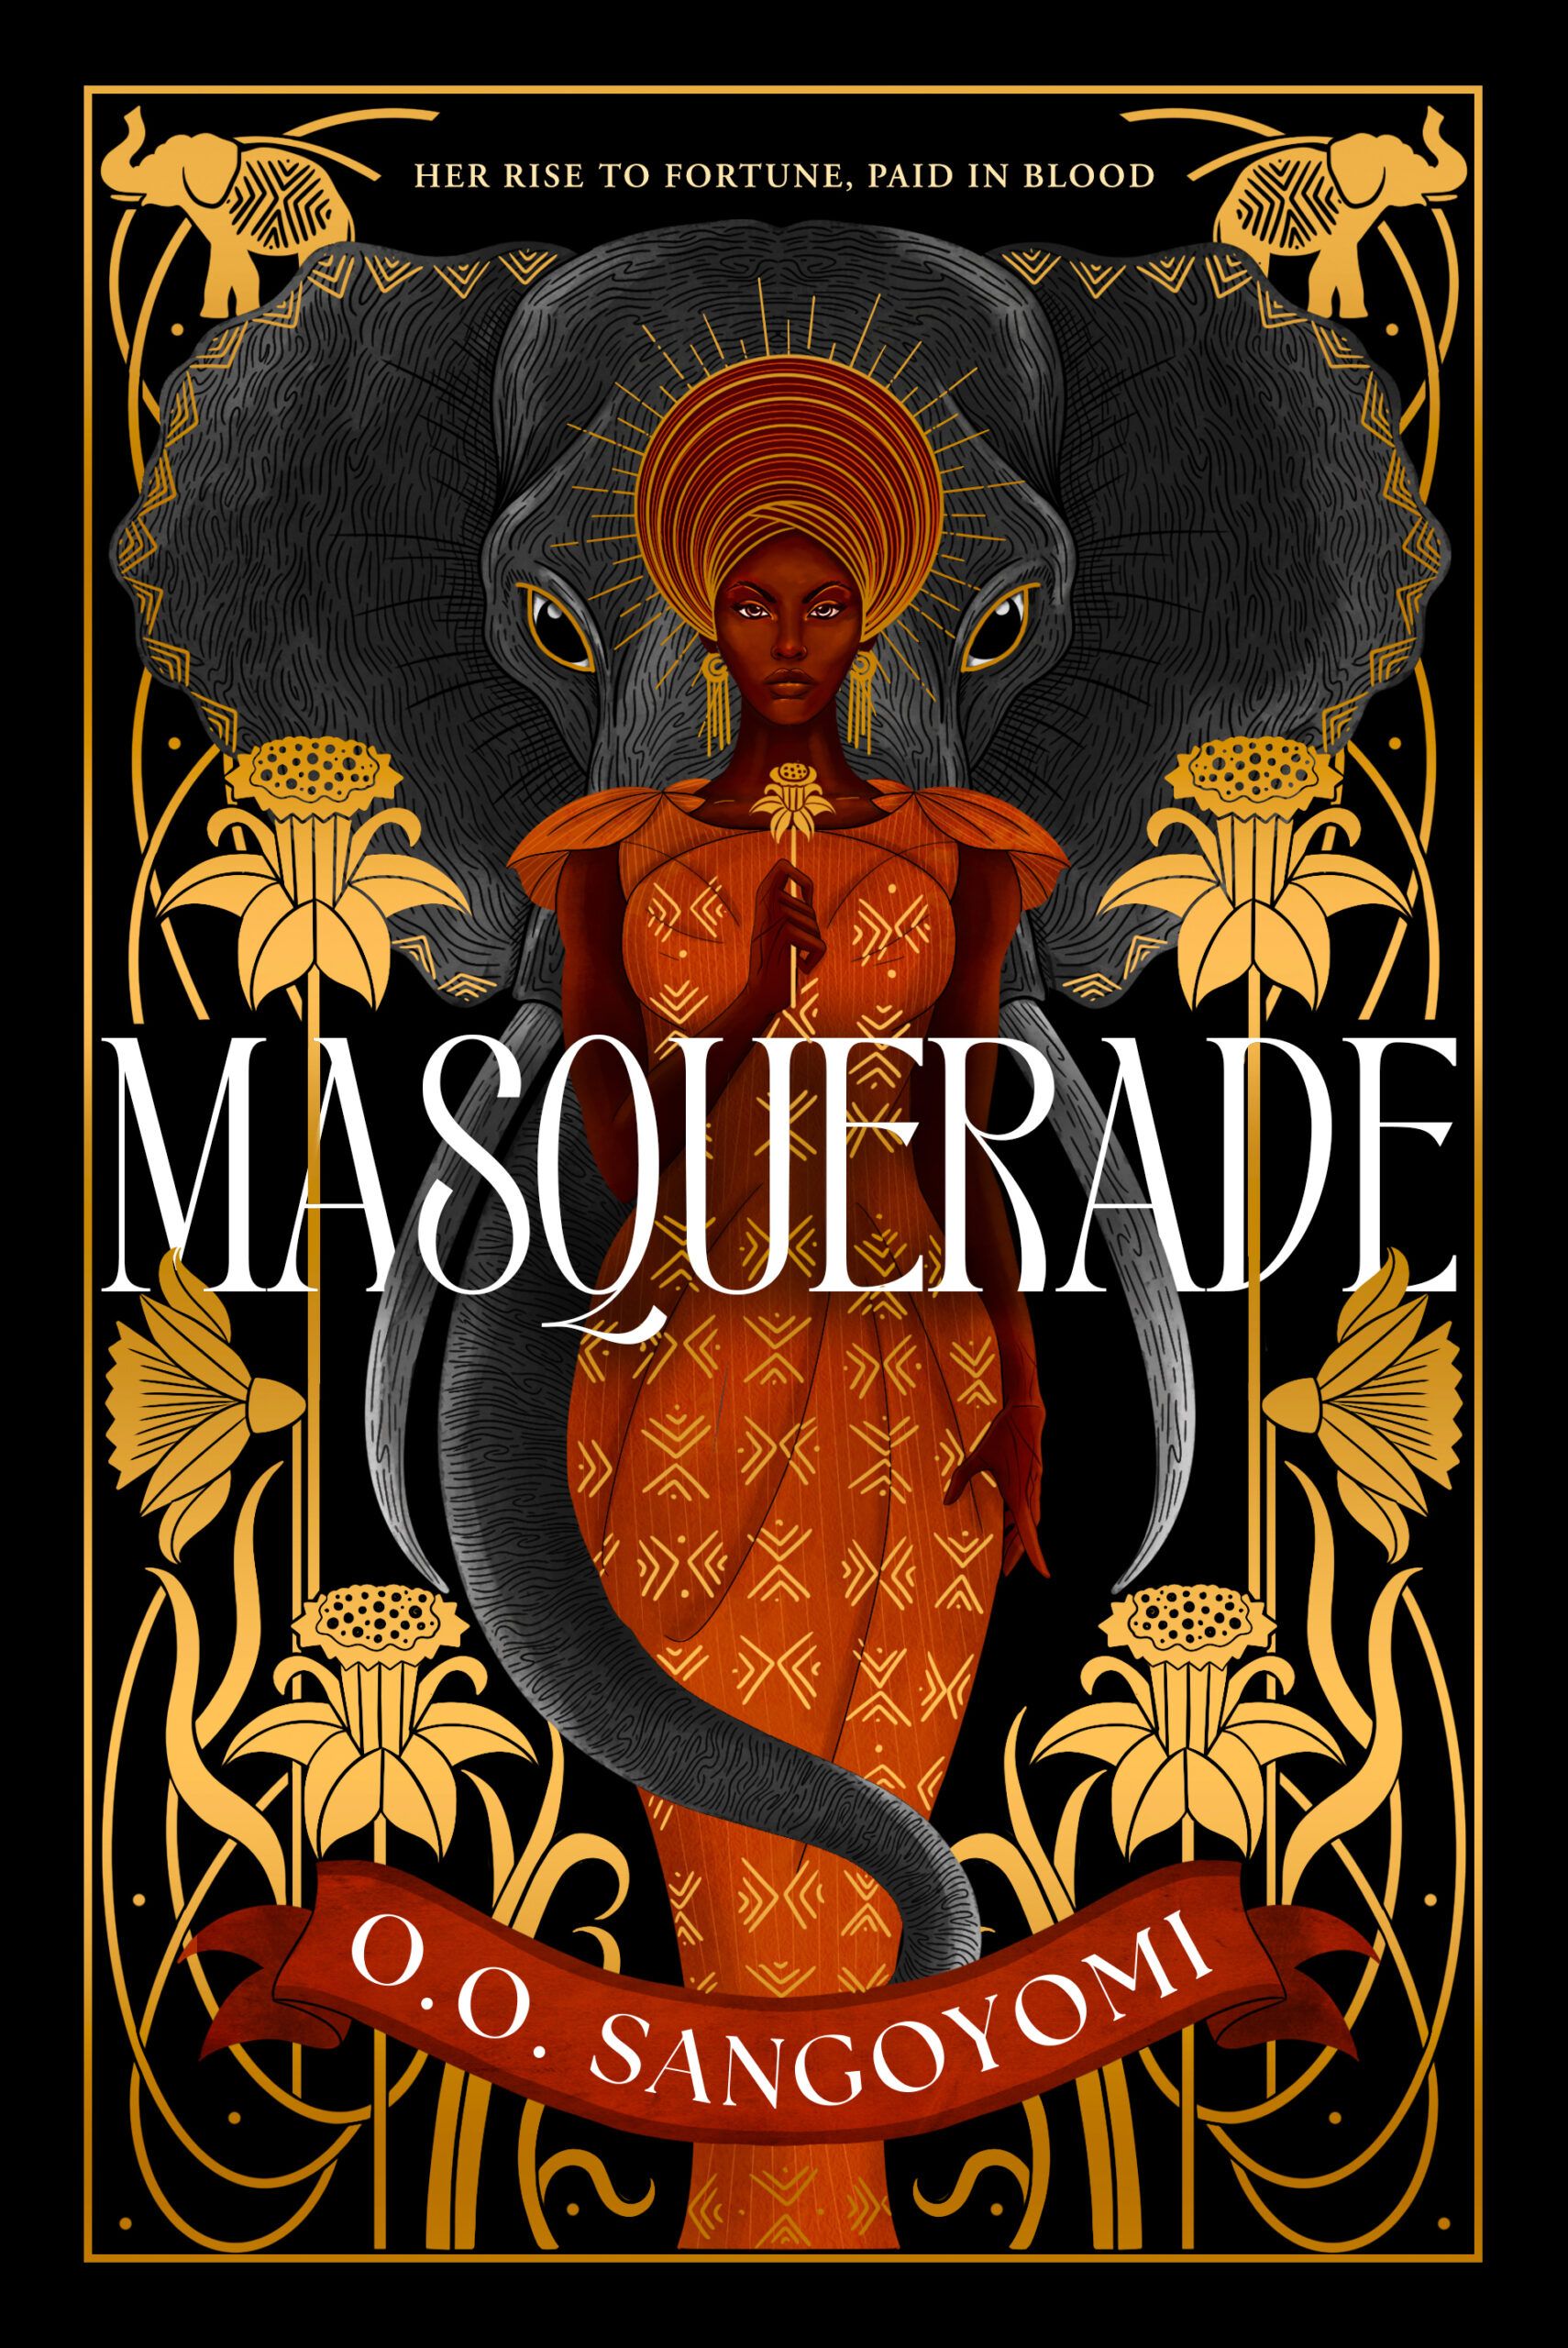 cover of Masquerade by O.O. Sangoyomi